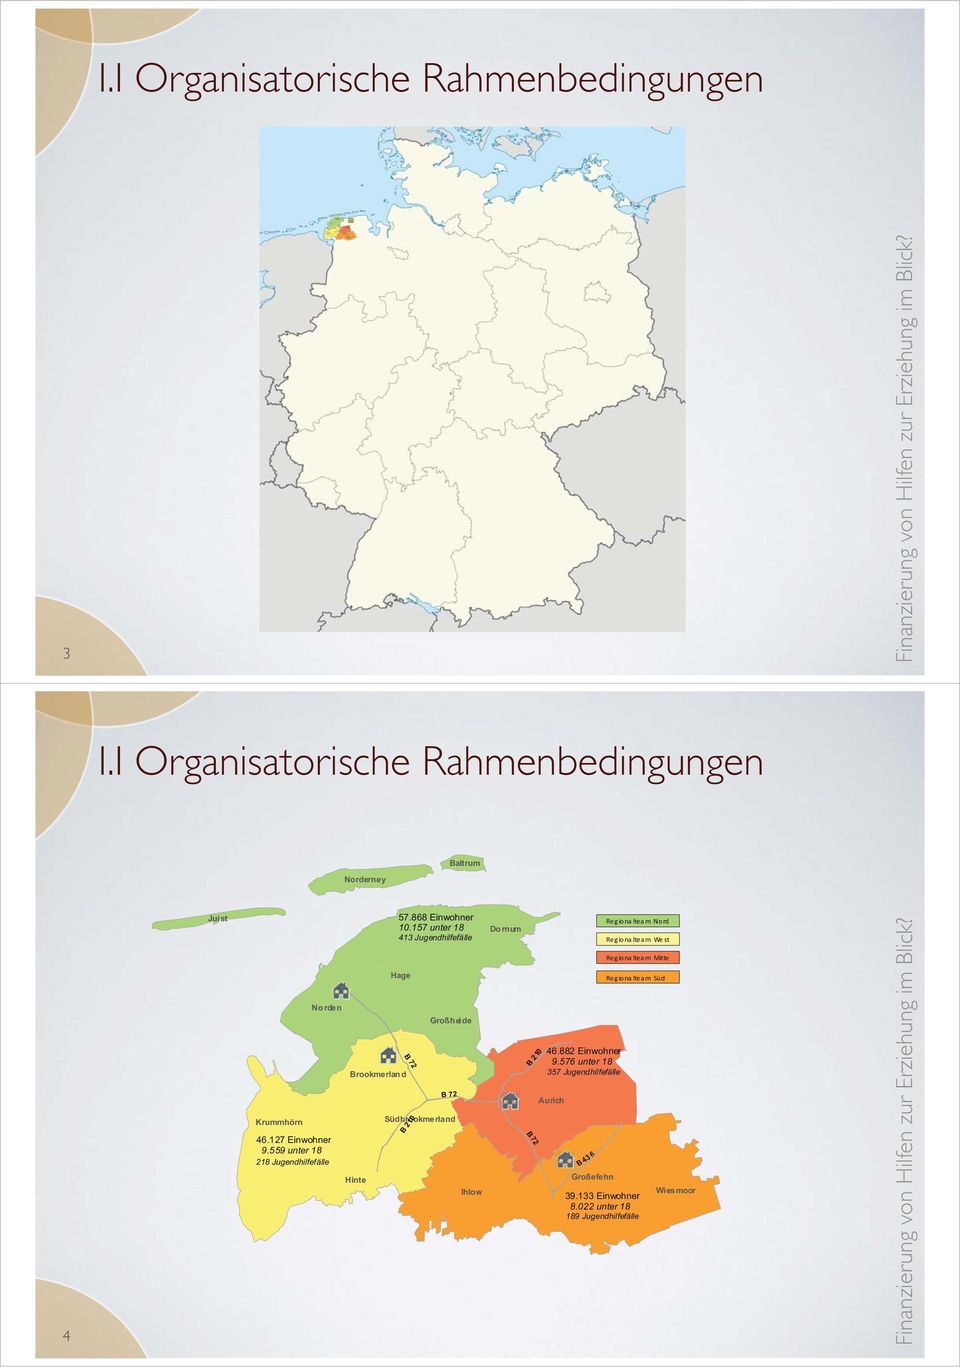 022 unter 18 189 Jugendhilfefälle Wi esmoor I.I Organisatorische Rahmenbedingungen 3 I.I Organisatorische Rahmenbedingungen Norderney Baltrum 4 Jui st 57.868 Einwohner 10.